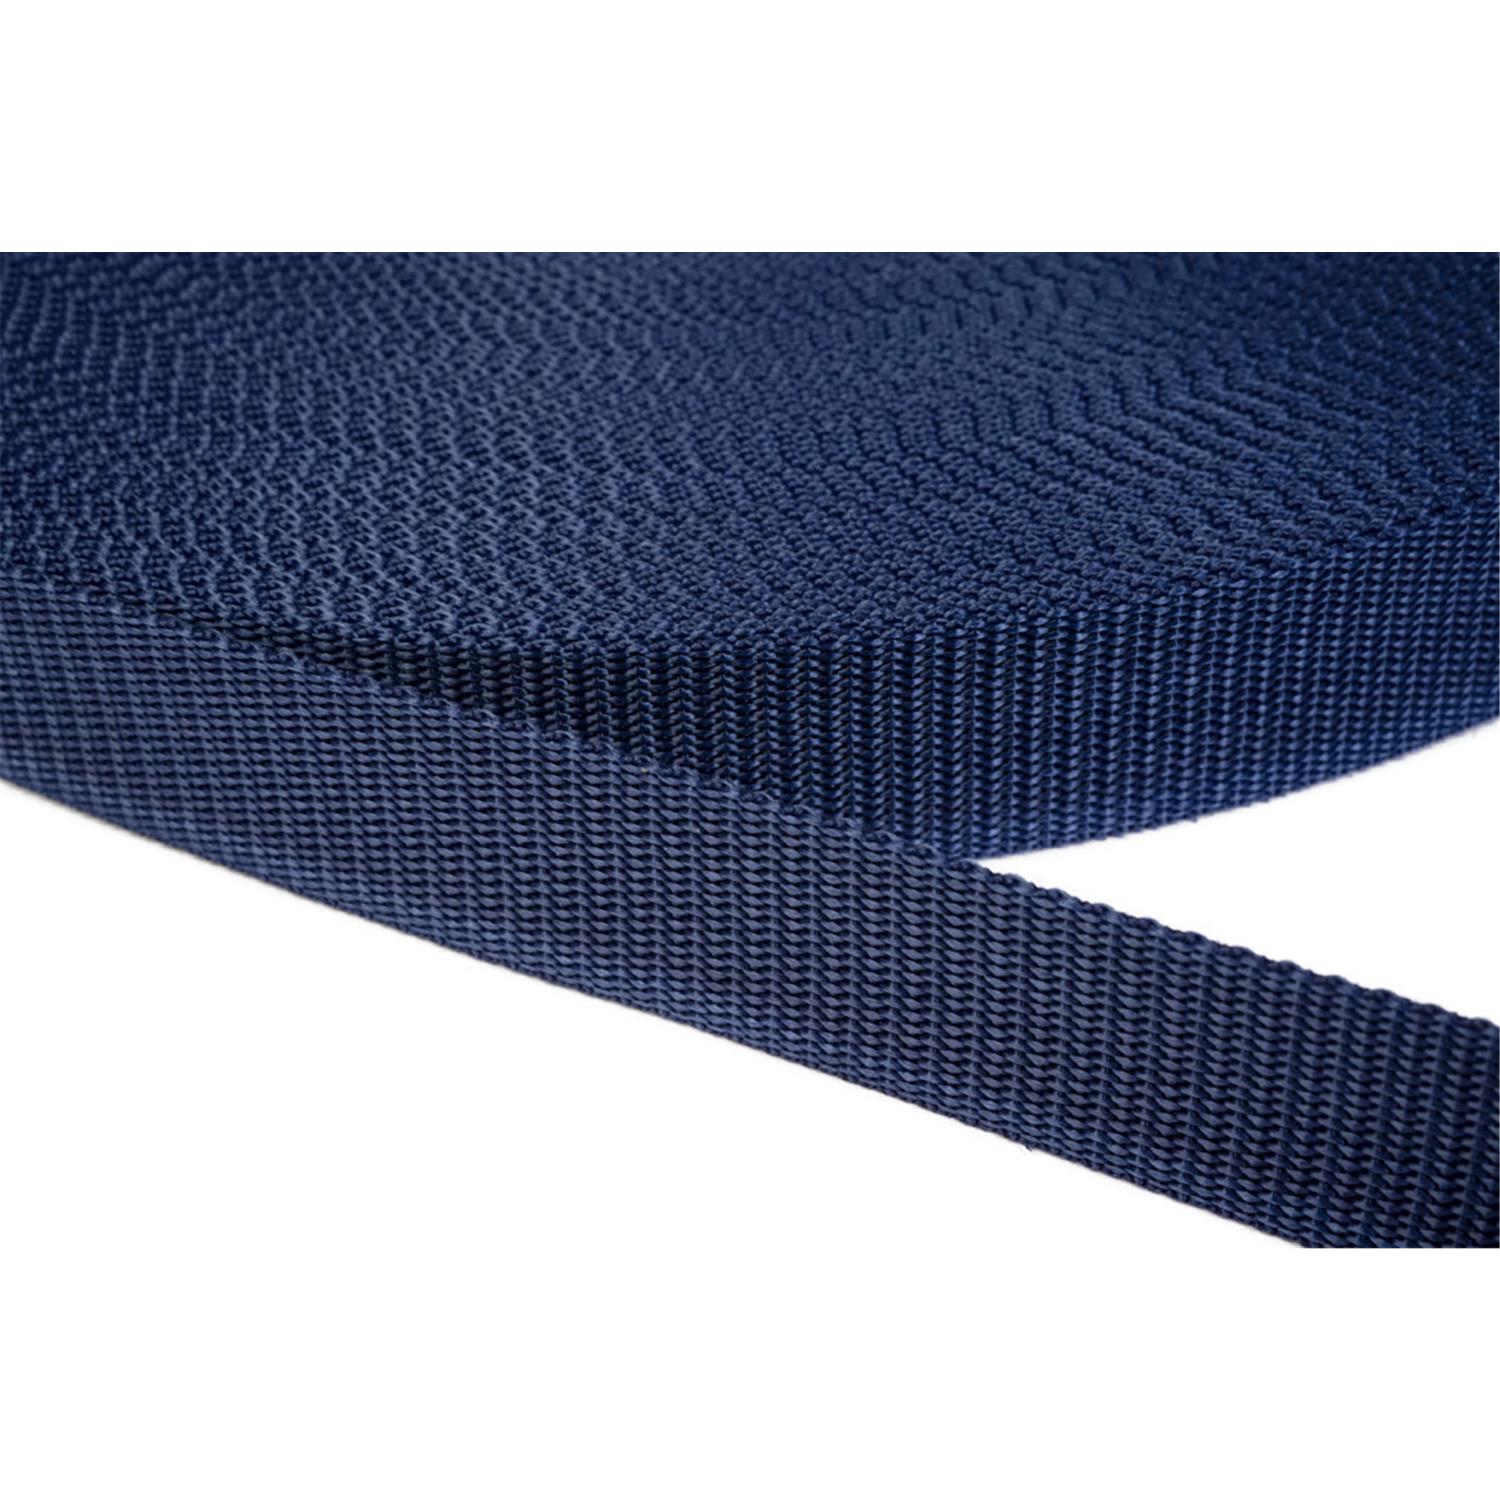 Gurtband 25mm breit aus Polypropylen in 41 Farben 27 - dunkelblau 6 Meter